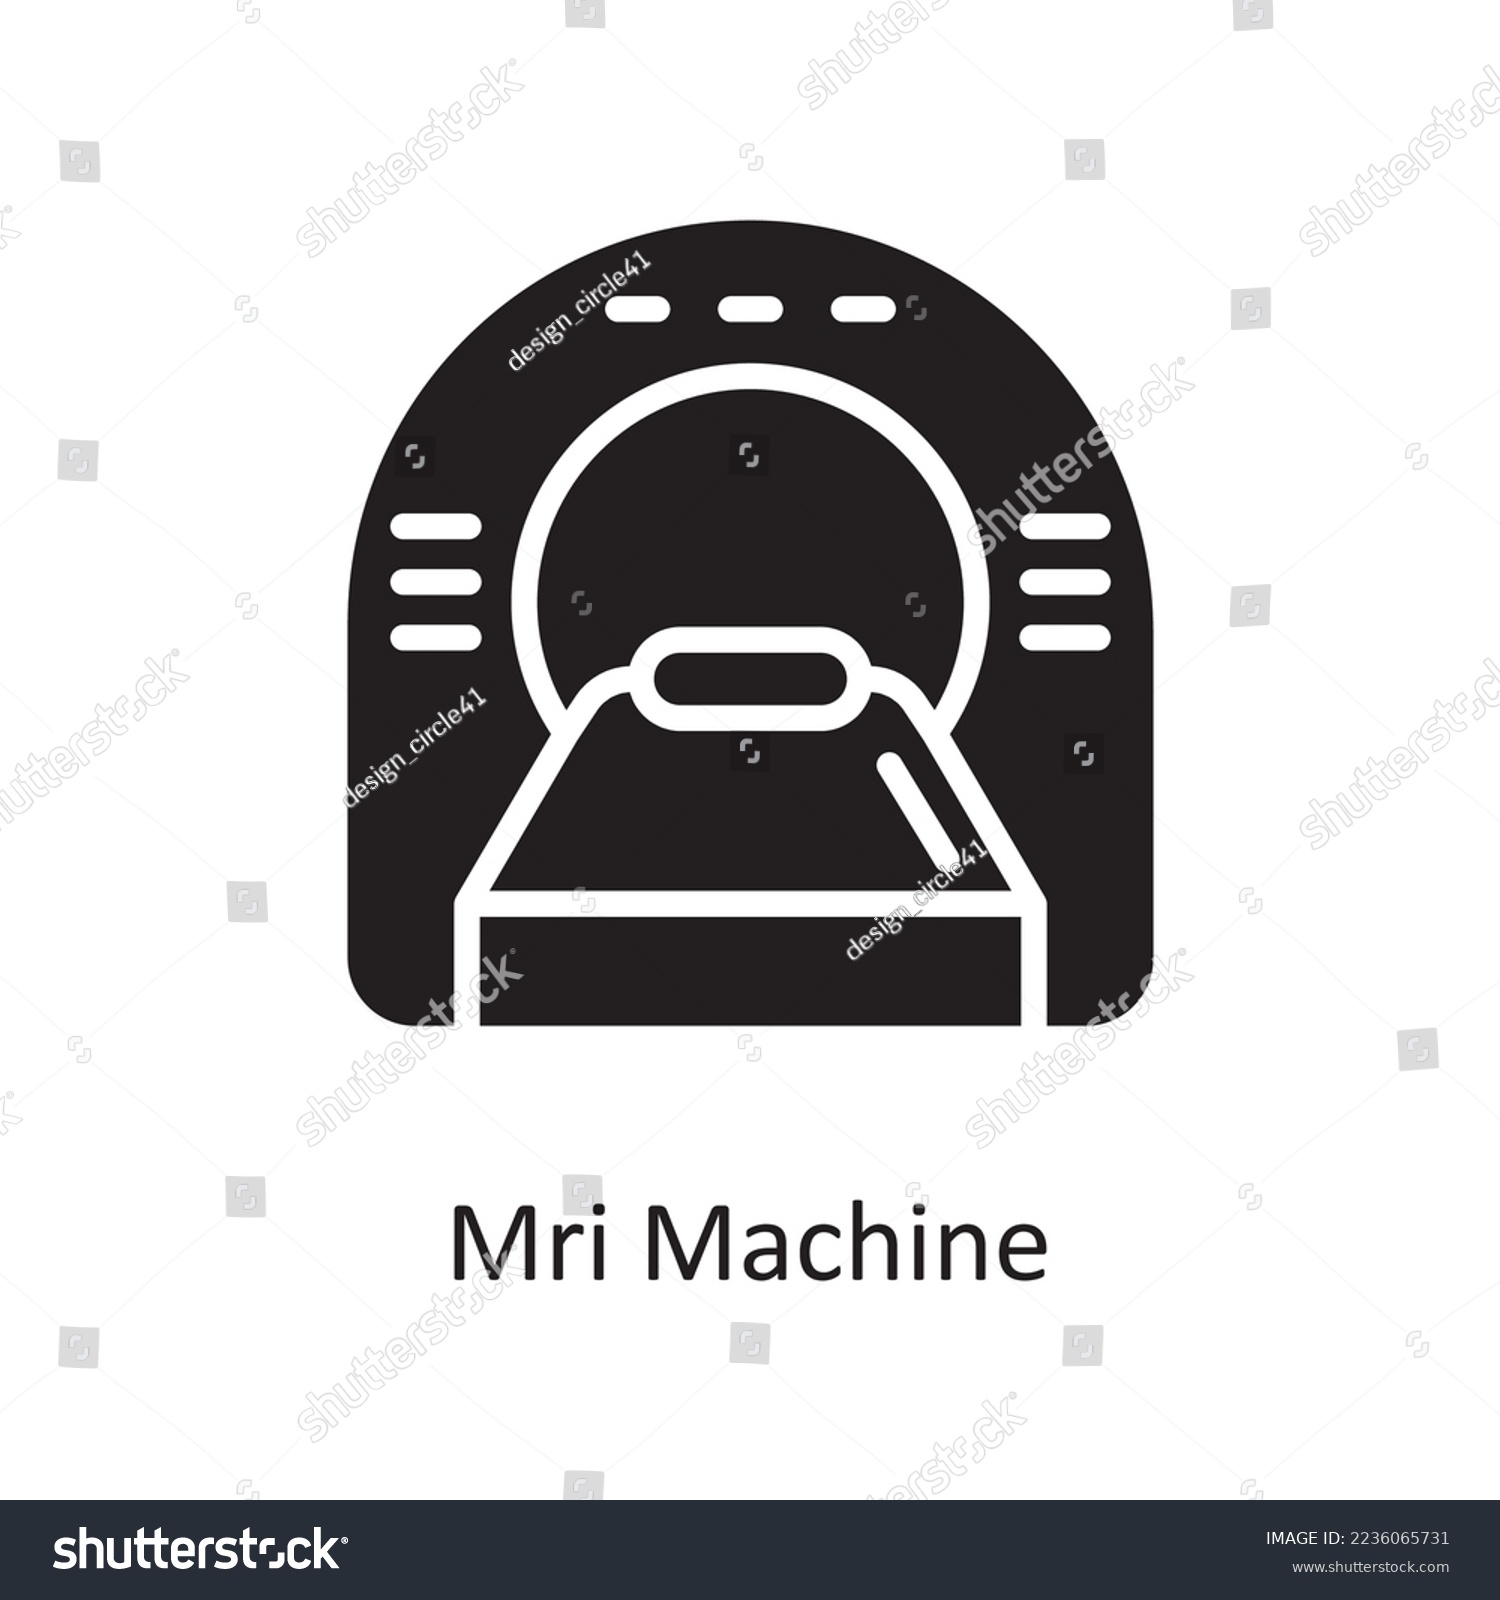 SVG of Mri Machine Vector Solid Icon Design illustration. Medical Symbol on White background EPS 10 File svg